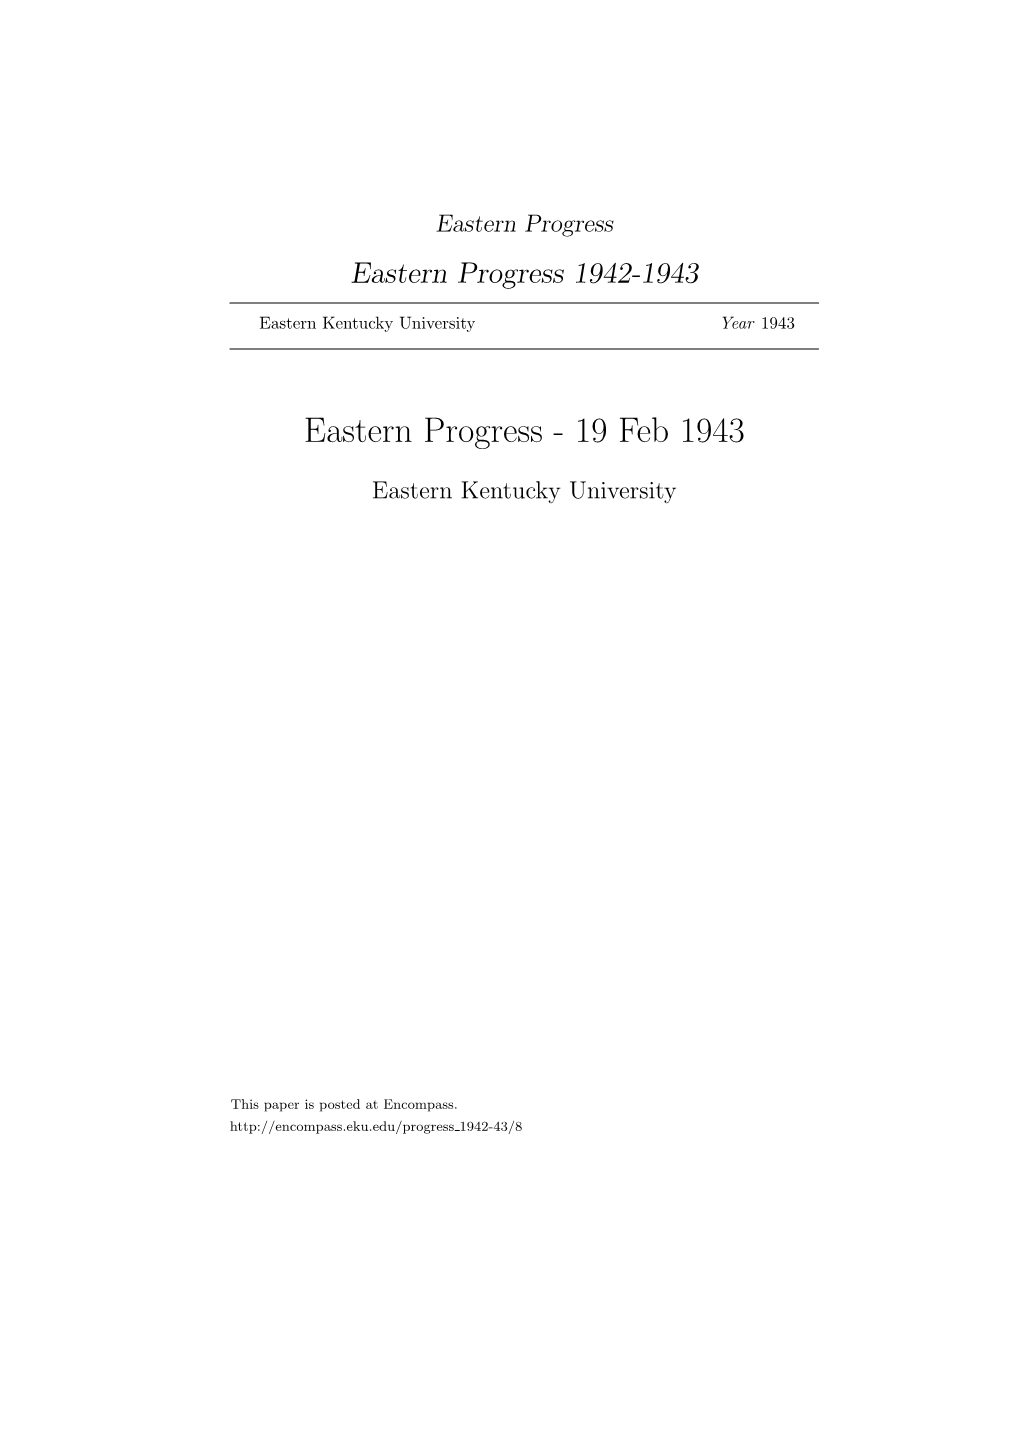 Eastern Progress Eastern Progress 1942-1943